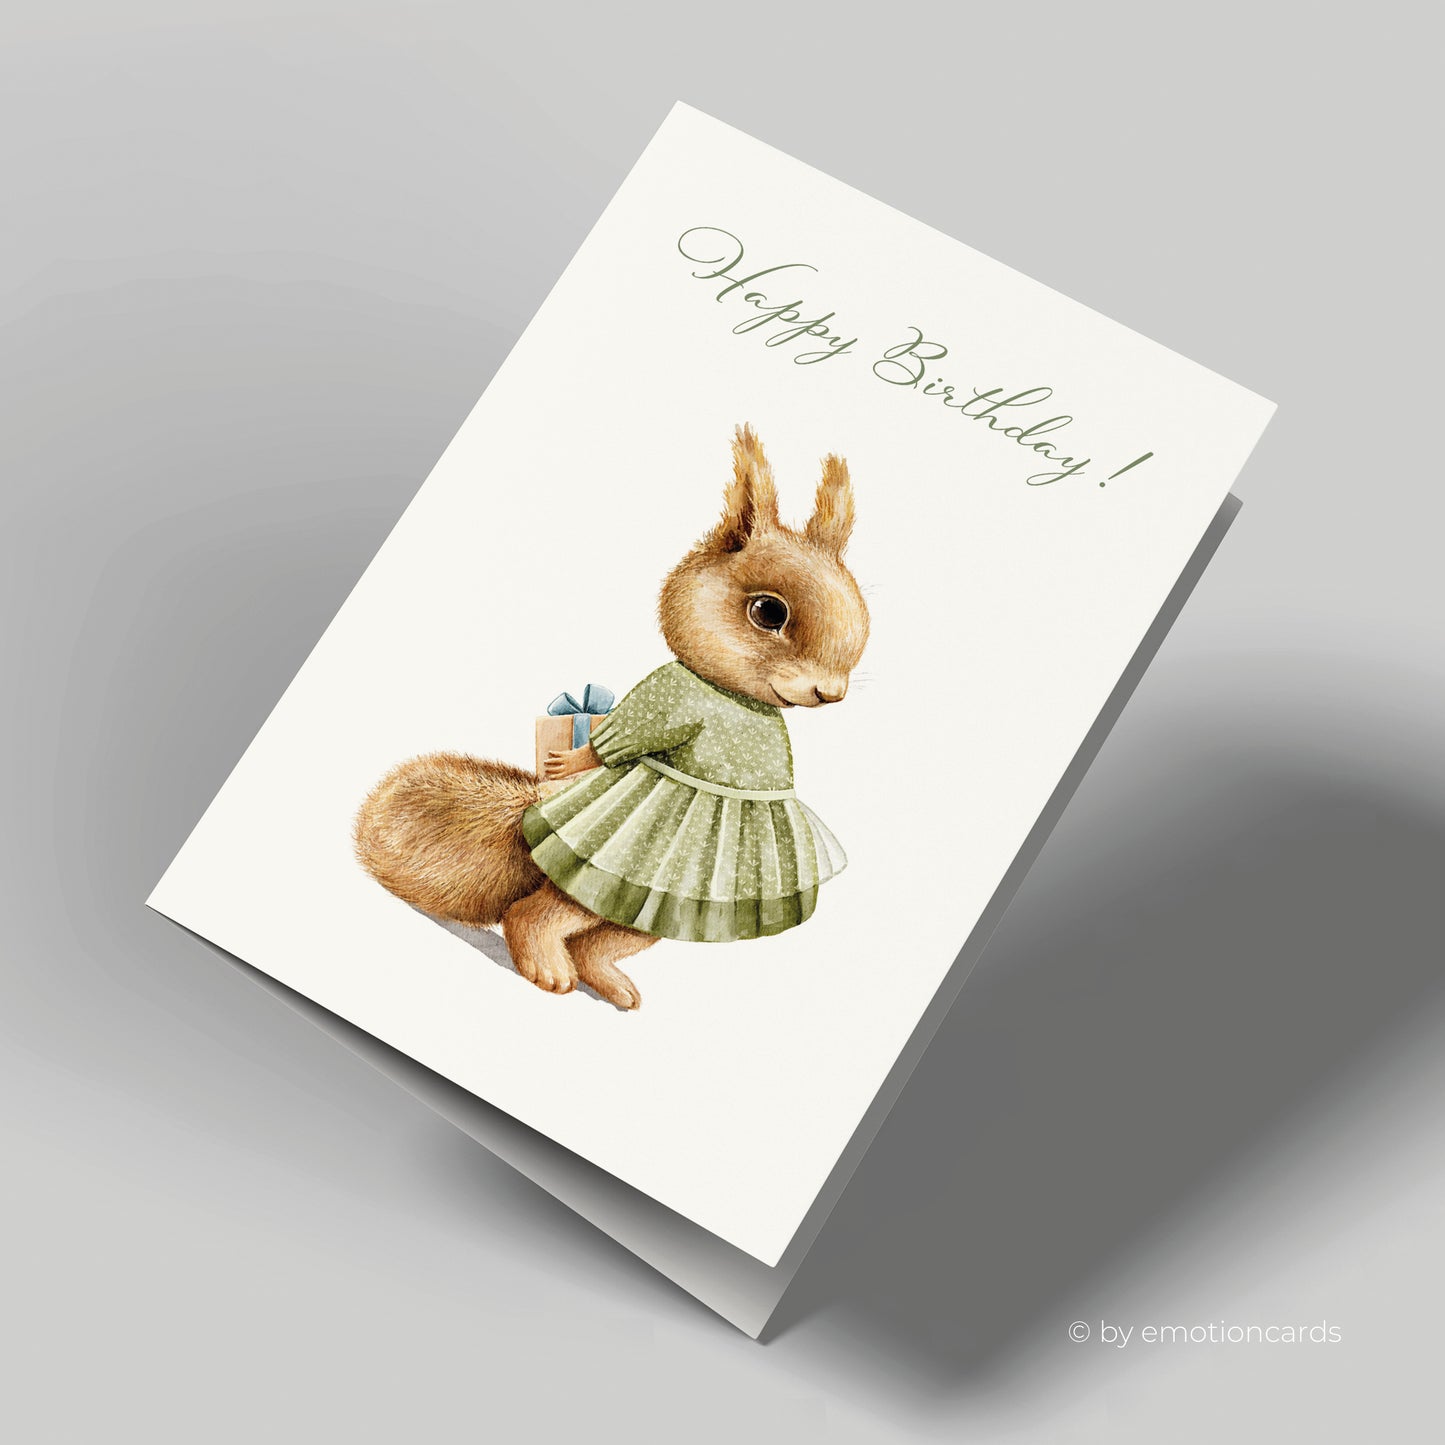 Geburtstagskarte | Happy Birthday Squirrel Geschenk Überraschung